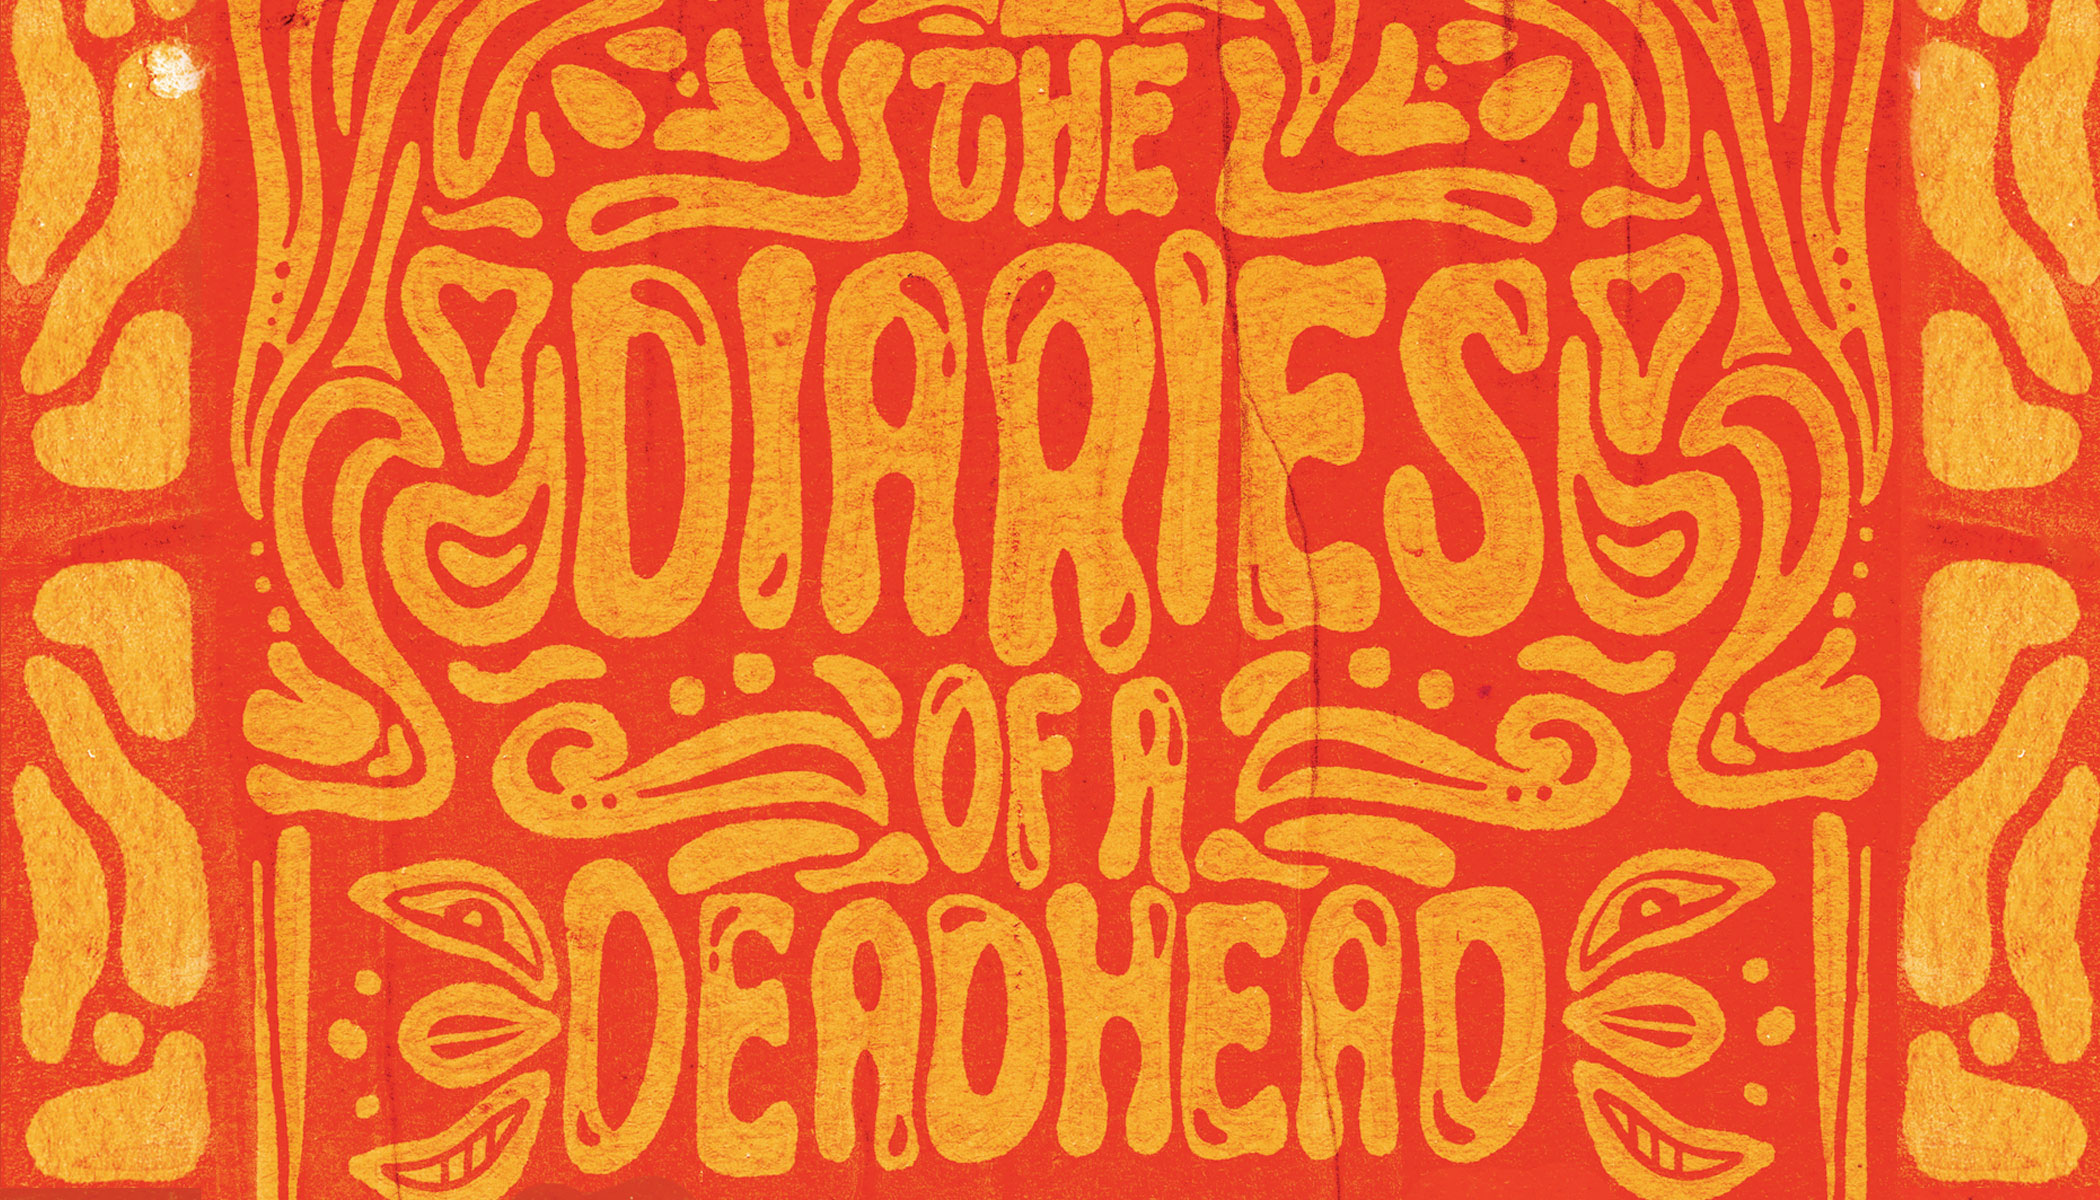 The Diaries of a Deadhead